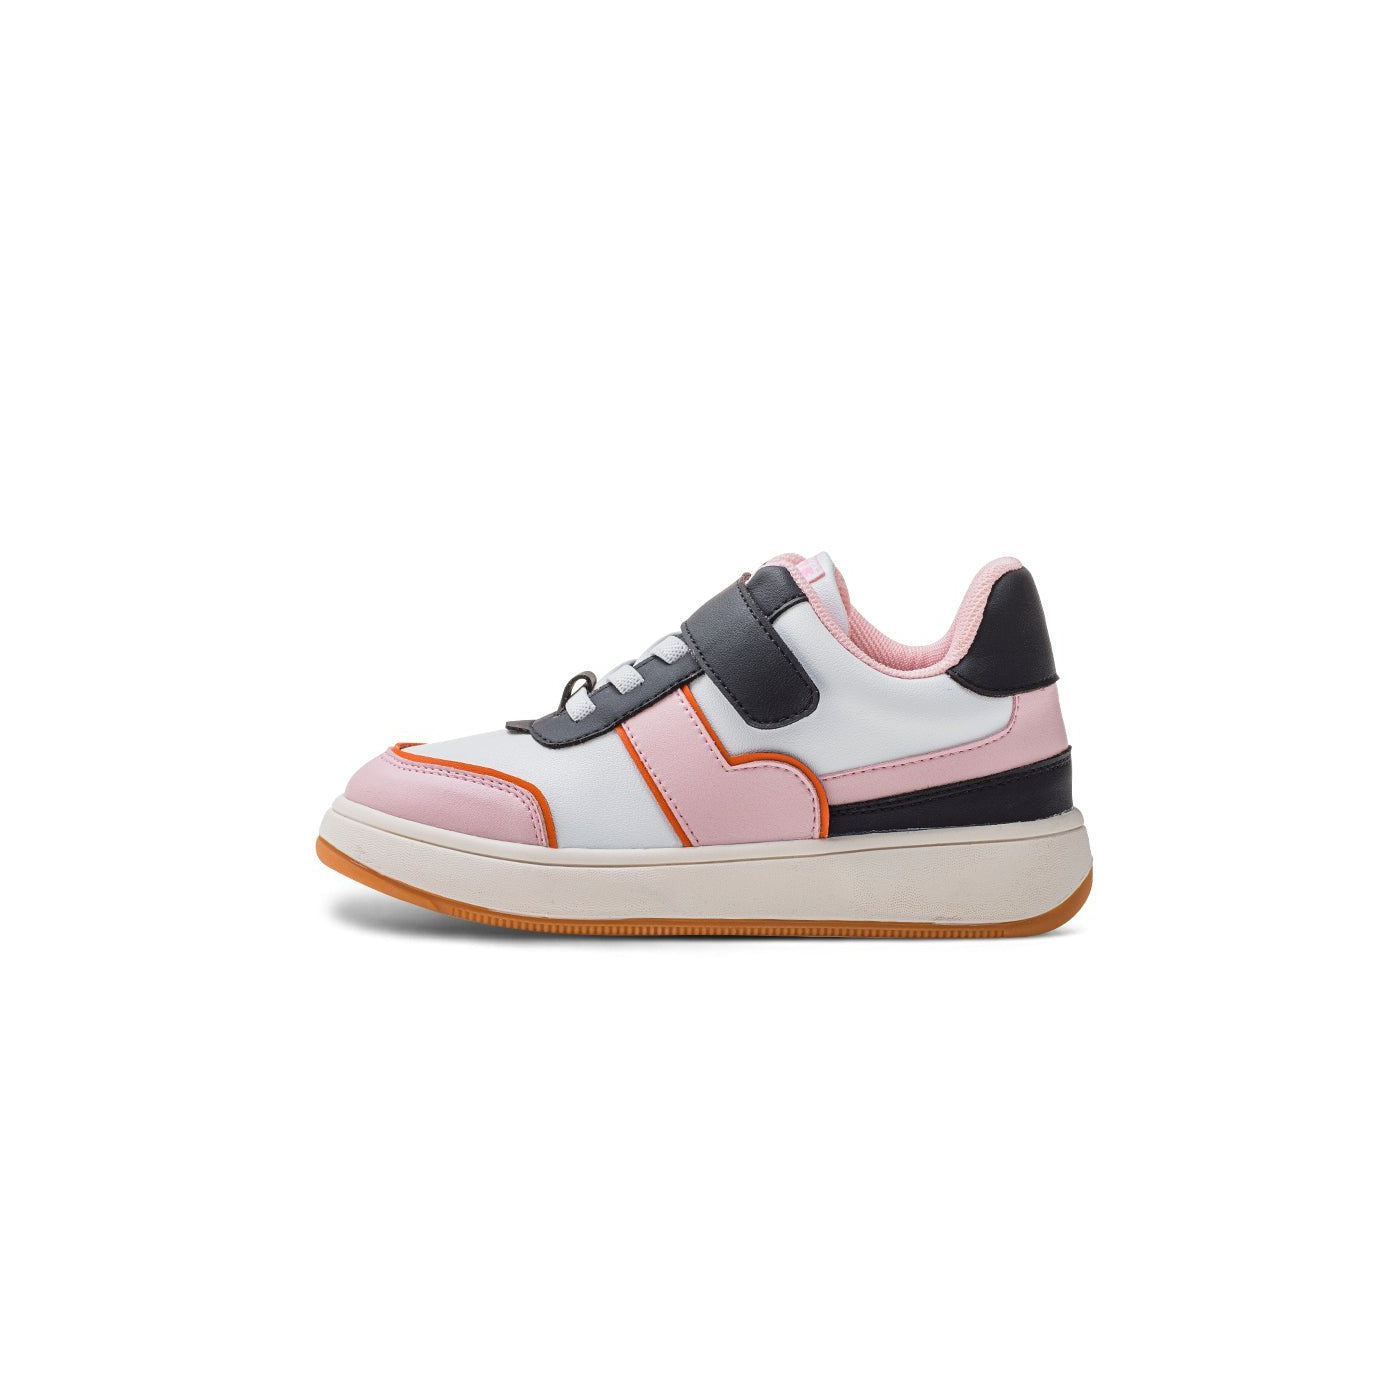 Pioneer Breathable Kids Pink Sneakers - 0cm